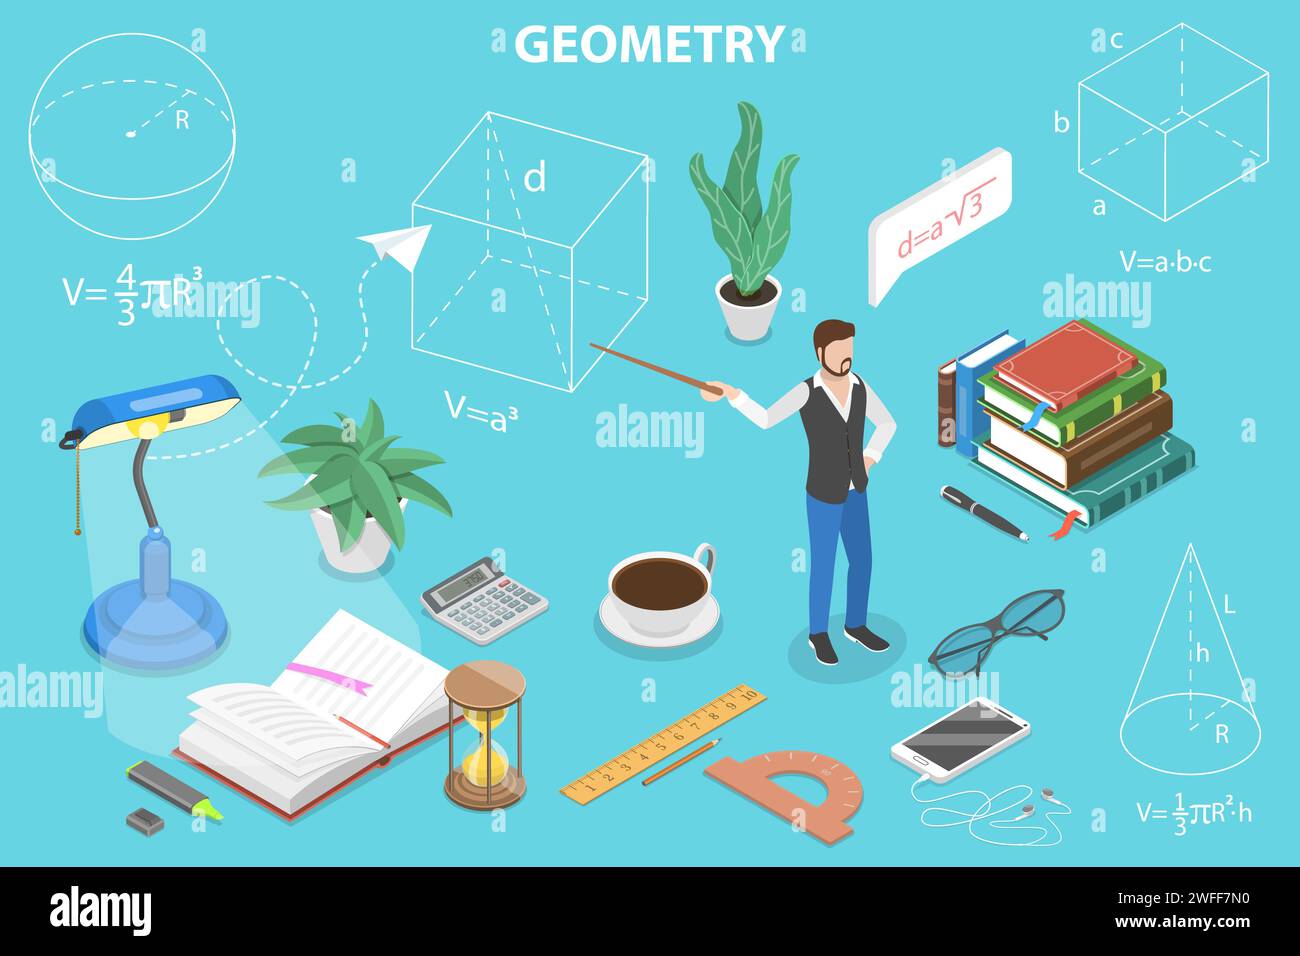 Corso di apprendimento 3D Isometric Flat Vector Concept of Geometry (concetto di geometria isometrica 3D), l'insegnante tiene una lezione sulla trigonometria. Illustrazione Vettoriale